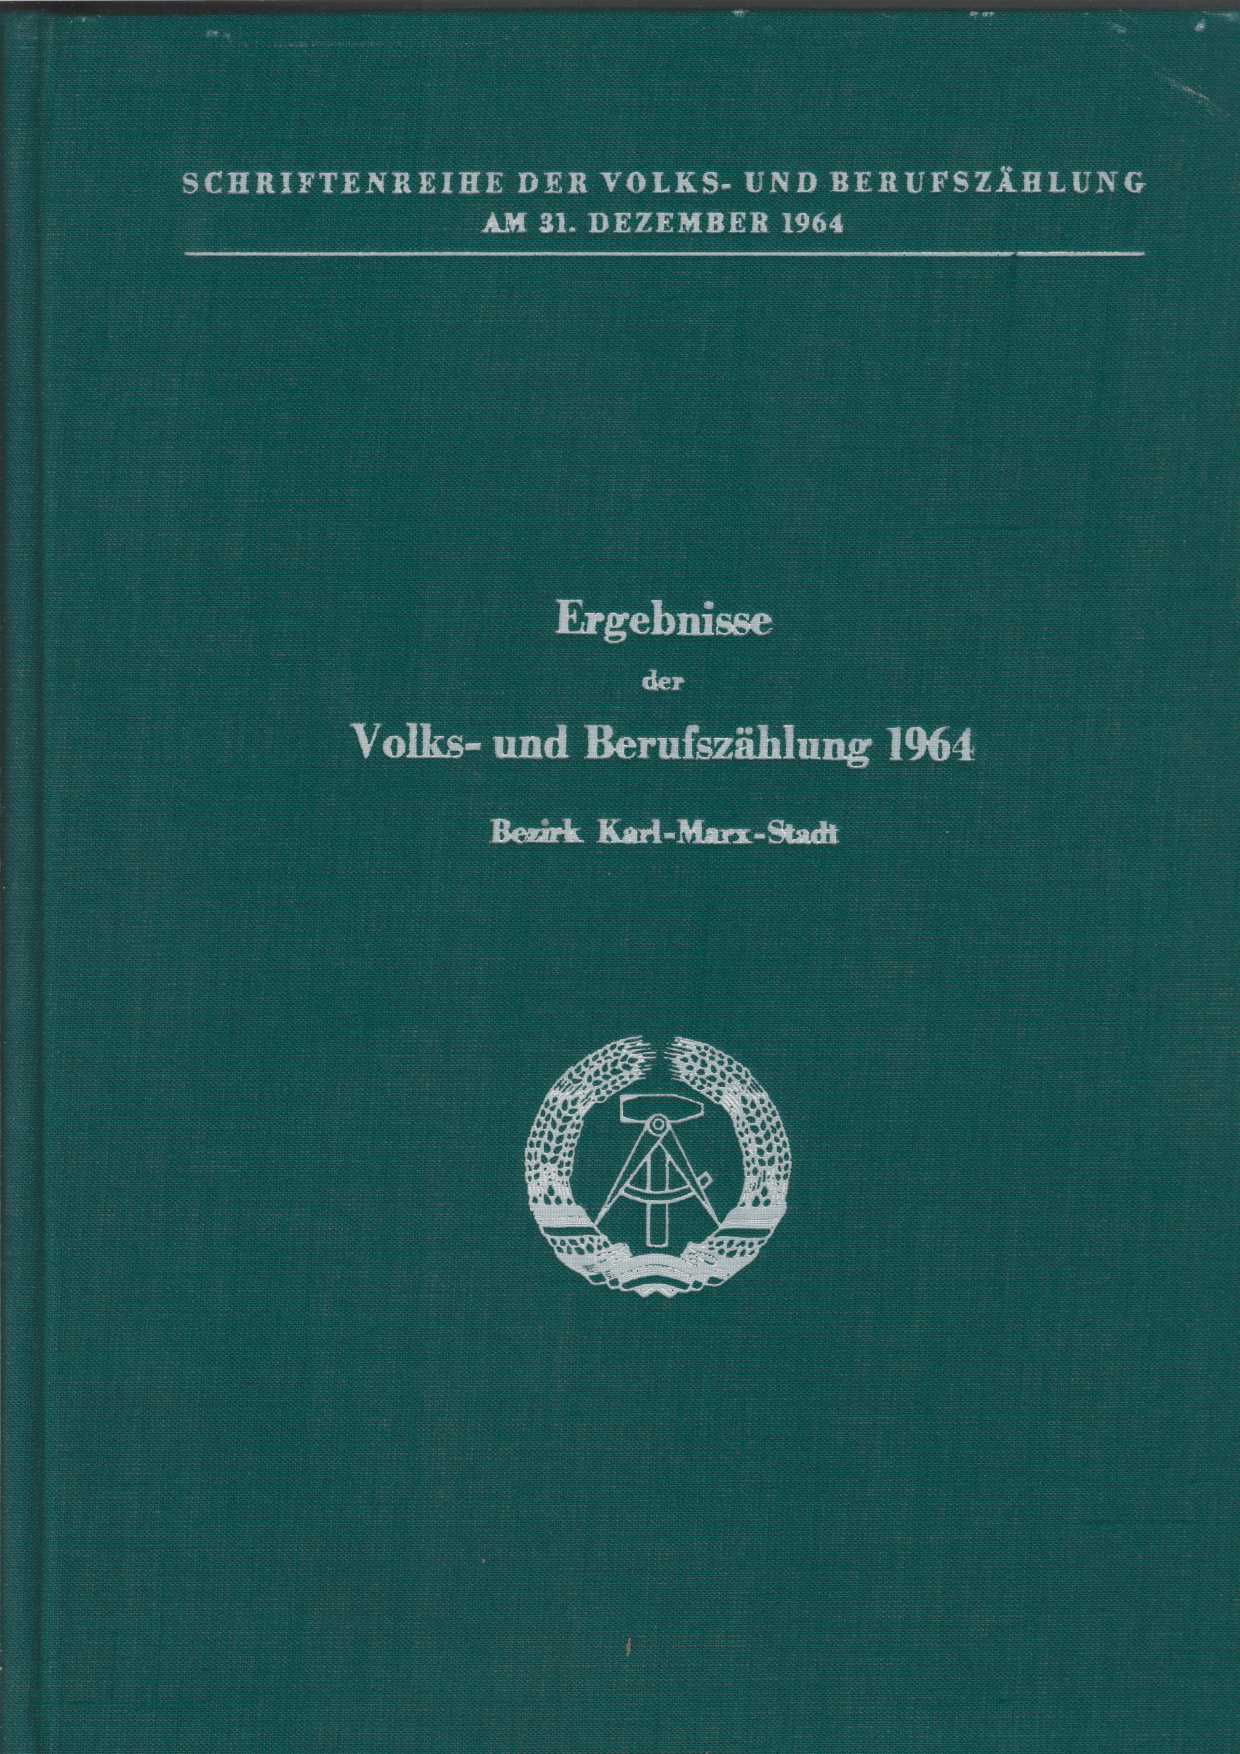   Ergebnisse der Volks- und Berufszhlung 1964 - Bezirk Karl-Marx-Stadt. 